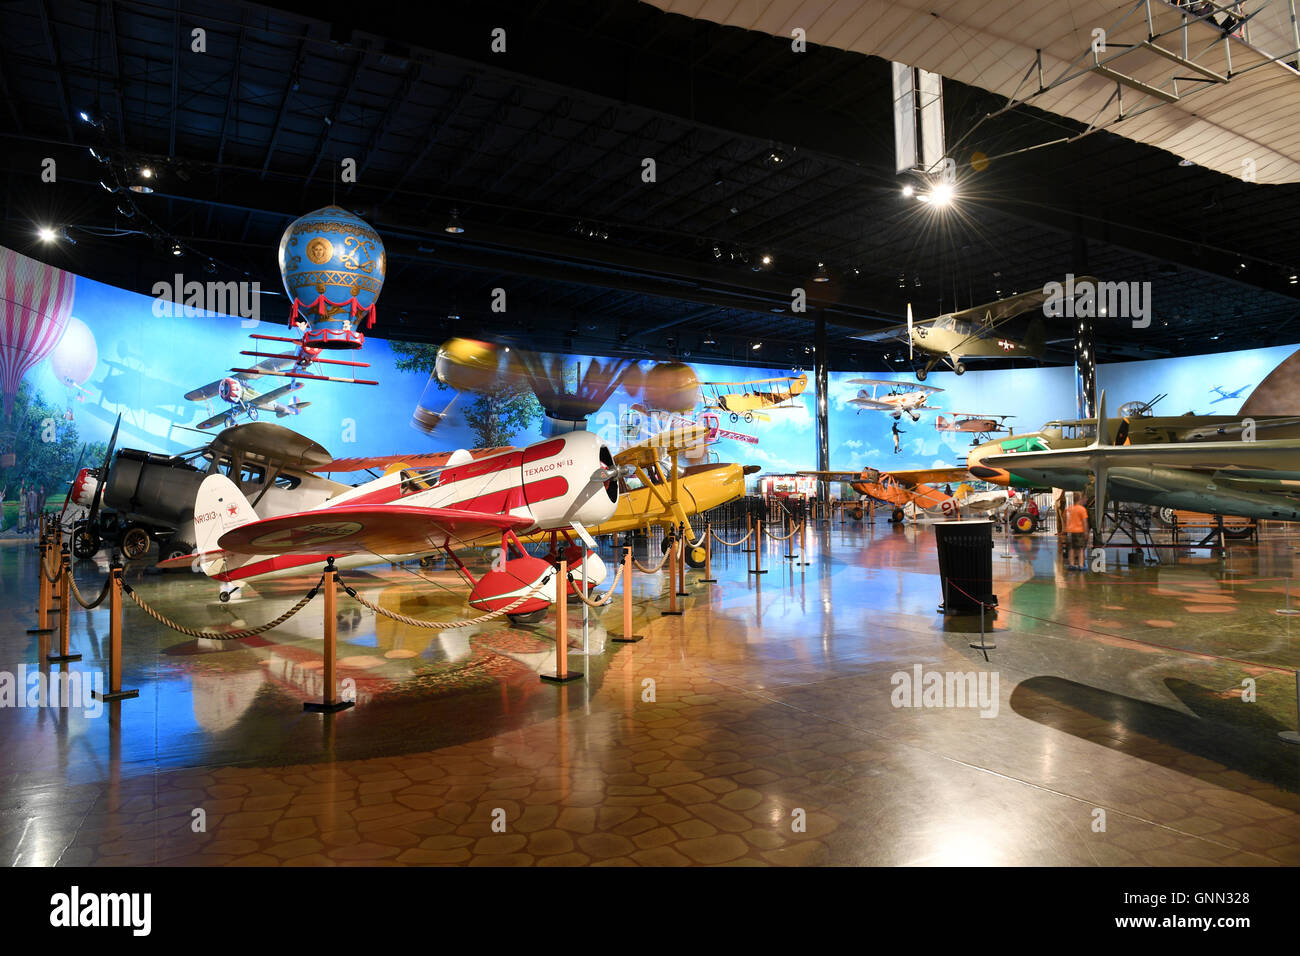 Kalamazoo, MI, USA – June 23, 2016: Aircraft on display at the Air Zoo Museum in Kalamazoo, Michigan Stock Photo